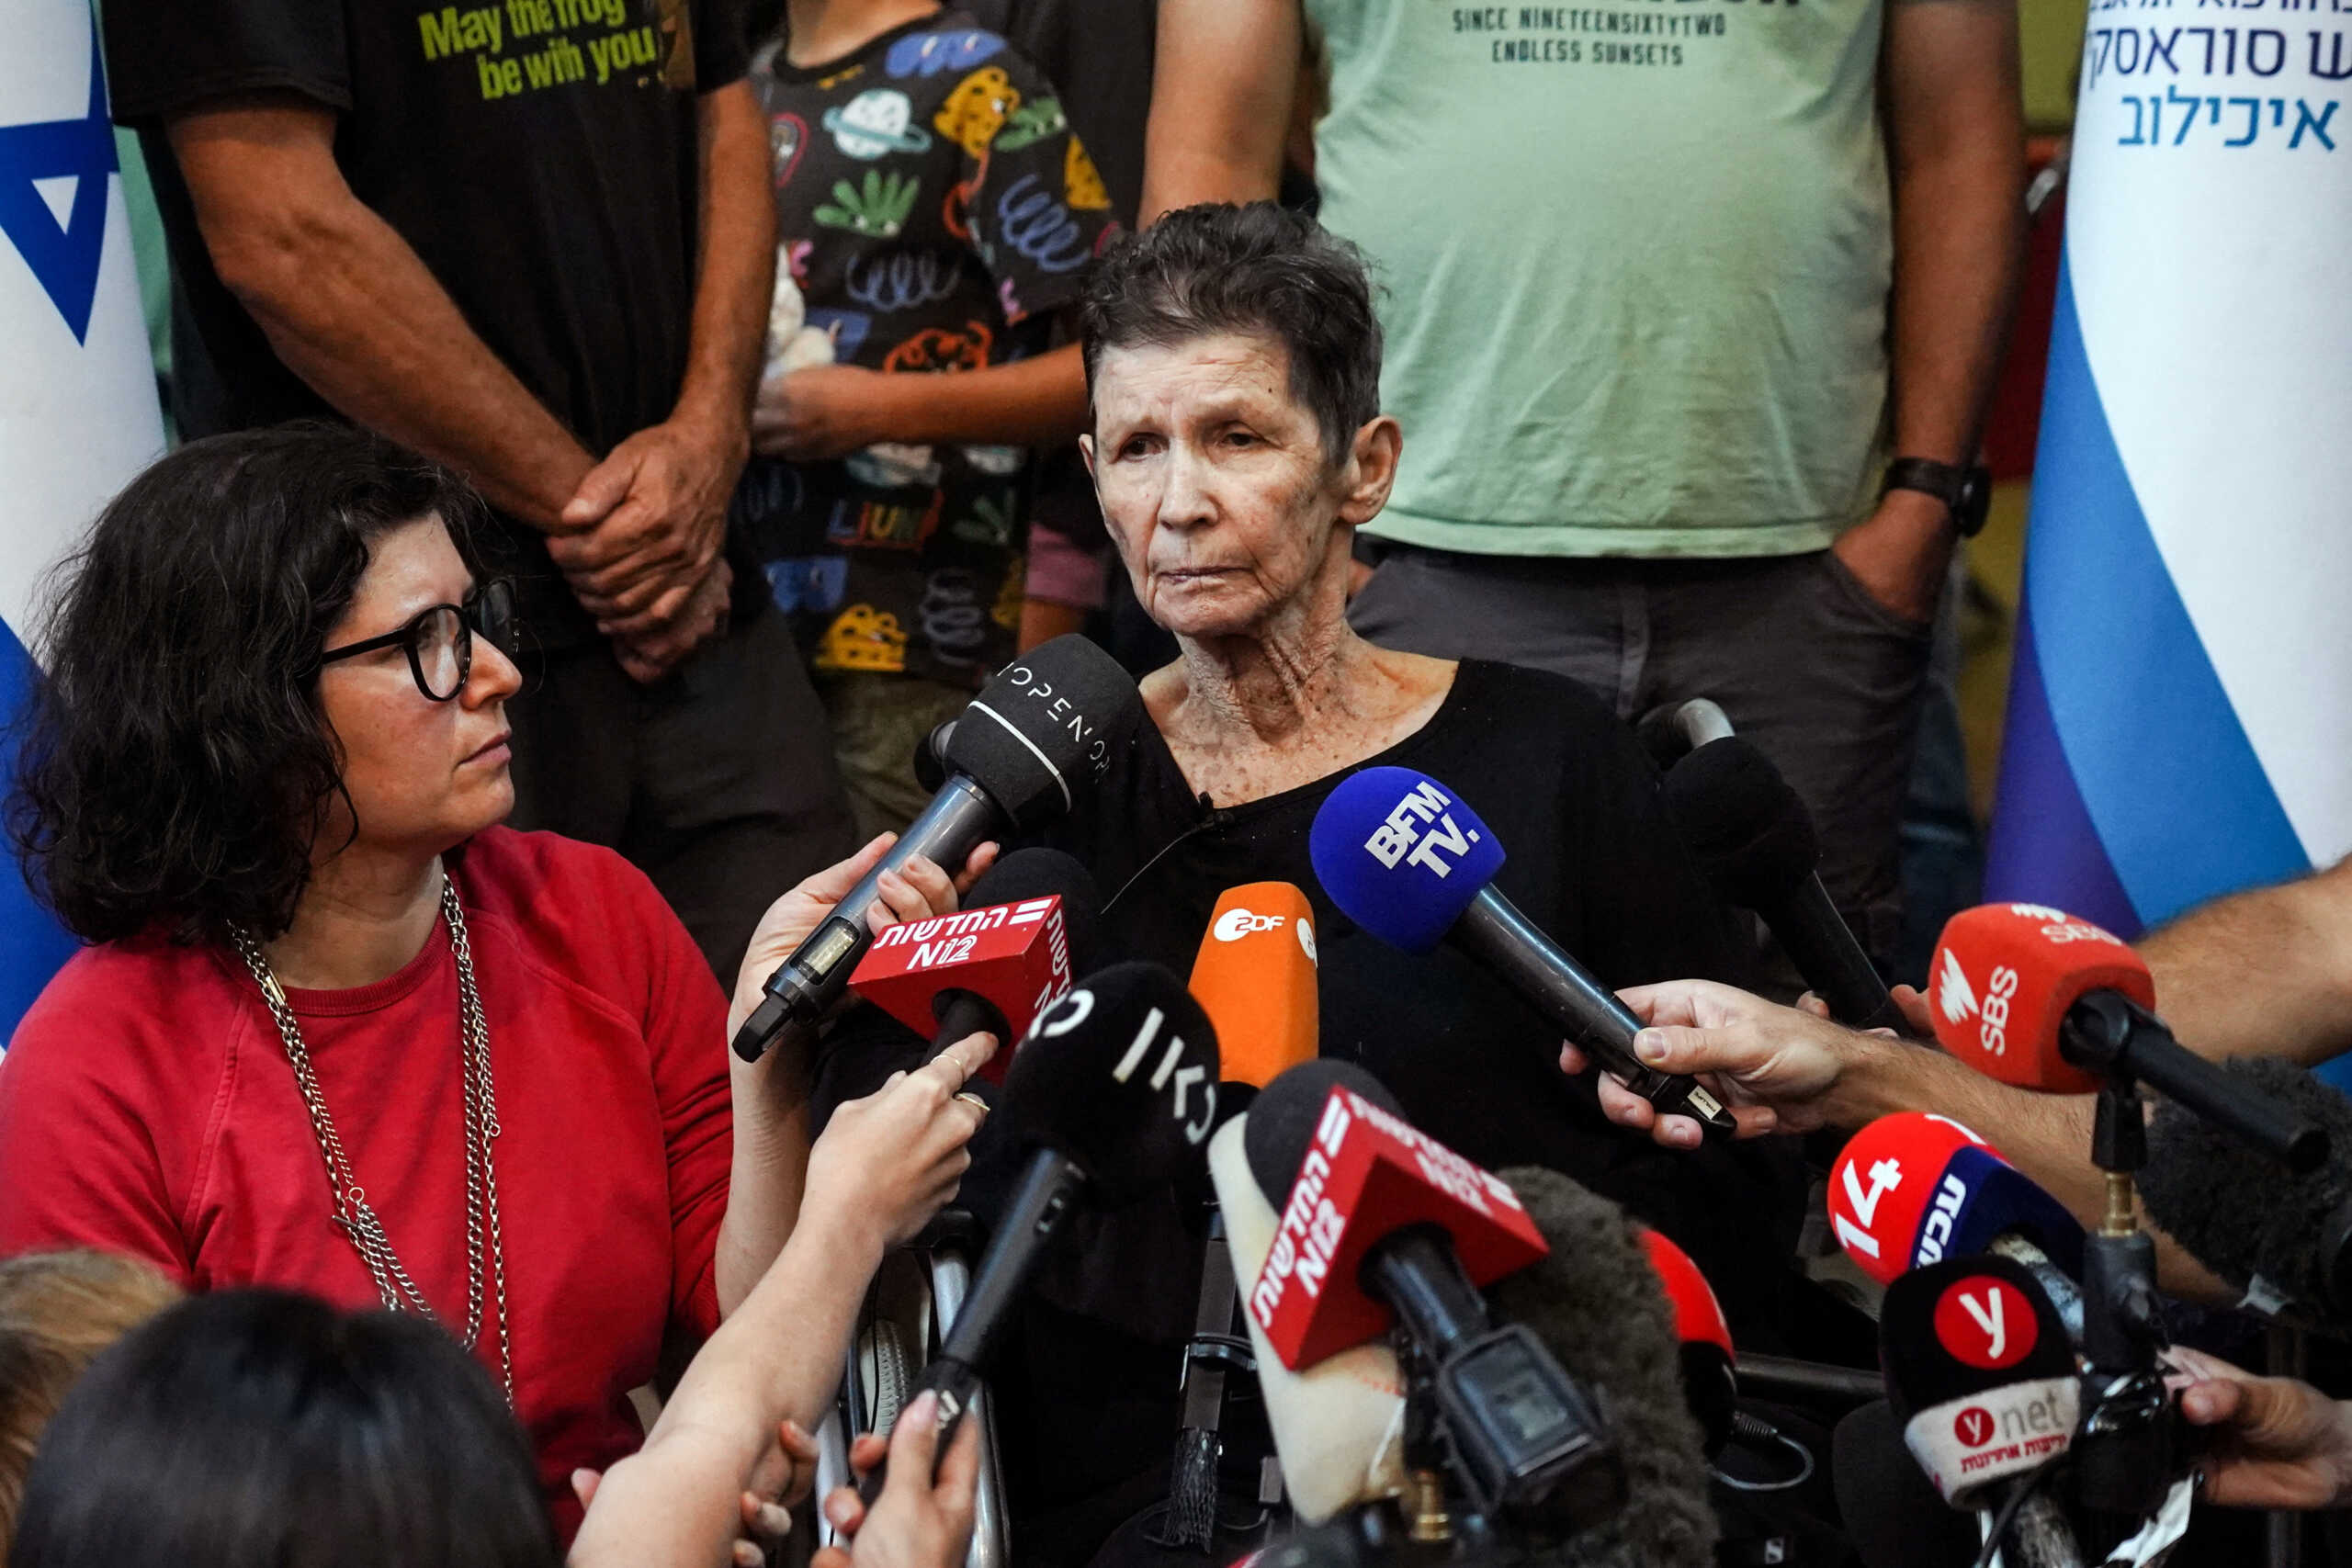 Πόλεμος στο Ισραήλ: «Έζησα μια κόλαση, με χτύπησαν, υπάρχουν υπόγεια τούνελ σαν ιστός αράχνης» – Συγκλονίζει η μαρτυρία πρώην ομήρου